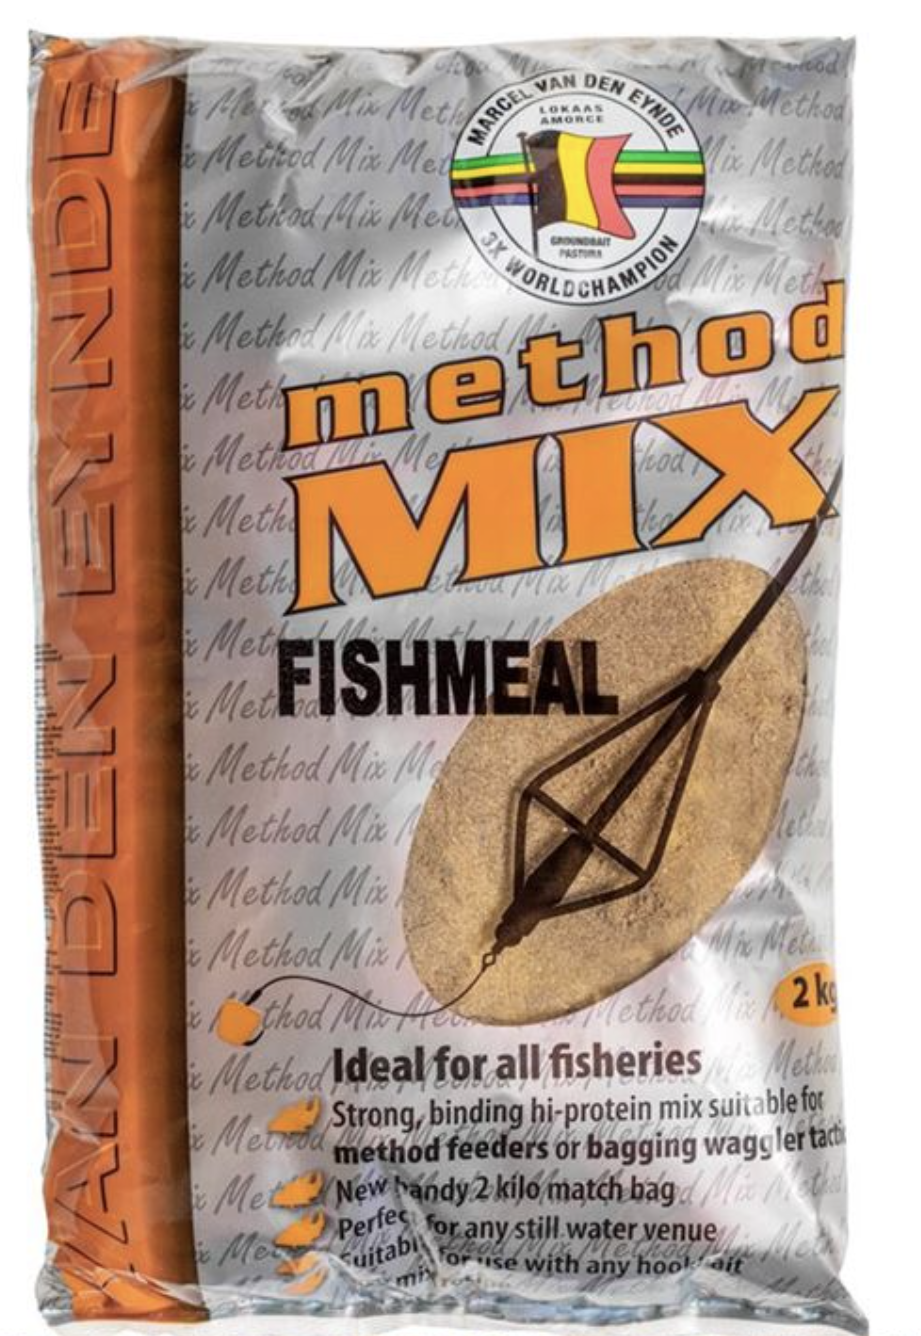 Method Mix Fishmeal  2 kg -Nije uzalud naš novi Method Mix nazvan Method mix Fishmeal. Bogat je proizvodima koji sadrže riblje brašno koje smo posebno odabrali. Vrlo je fine strukture i visokokvalitetna je metodska mješavina koja upija mnogo vode zbog visokog sadržaja ribljeg brašna, pa se preporučuje više puta navlažiti. ** Na 1 kg metodske mješavine idealno je pola litre vode. Najbolje za hidrataciju dva puta u razmaku od 15 minuta. Savjet kako da procijenite da li je vaš feed spreman? Ako možete napraviti lopticu koja se olabavi jednako brzo kao i lopticu, mješavina je spremna za upotrebu. Zbog tamnog karaktera, mješavina se može koristiti u plitkim i dubljim vodama. Također možete koristiti Method Mix Fishmeal u drugim disciplinama, čineći mješavinu pravim svestranim s okom na komercijalni ribolov. Smjesa se može koristiti uglavnom za šarane i deverike na komercijalnim vodama. Lako možete kombinovati Method mix riblje brašno na 1 kg, dodajući 200 grama elitnih peleta 3mm. Napominjemo da je najbolje pelete pripremiti zasebno. Potopite 2 ili 3 minute, ocijedite i dodajte u smjesu. Kao dodatni savjet, ne zaboravite naše potopljene mrvice, one pružaju lijepu paletu boja koja može osigurati da će riba biti manje sumnjičava prema vašoj eventualno obojenoj mamci za udicu kao što su naše bučice. Drugi savjet: Za ciljanje većih riba, koristite tekući pojačivač Shell Fish ili Meat dodavanjem malo u vodu vašeg mamca. Ako želite koristiti tekući pojačivač za svestraniji ribolov, najbolje je koristiti tekući booster čokoladu, Scopex ili sirup. Dodajte Simply 1 Lid of Liquid pojačivač za svakih 50 grama proizvoda u vodu za pripremu (naši pojačivači tekućine su prilično jaki, ali možete dodati još). Cijena: 18 BAM